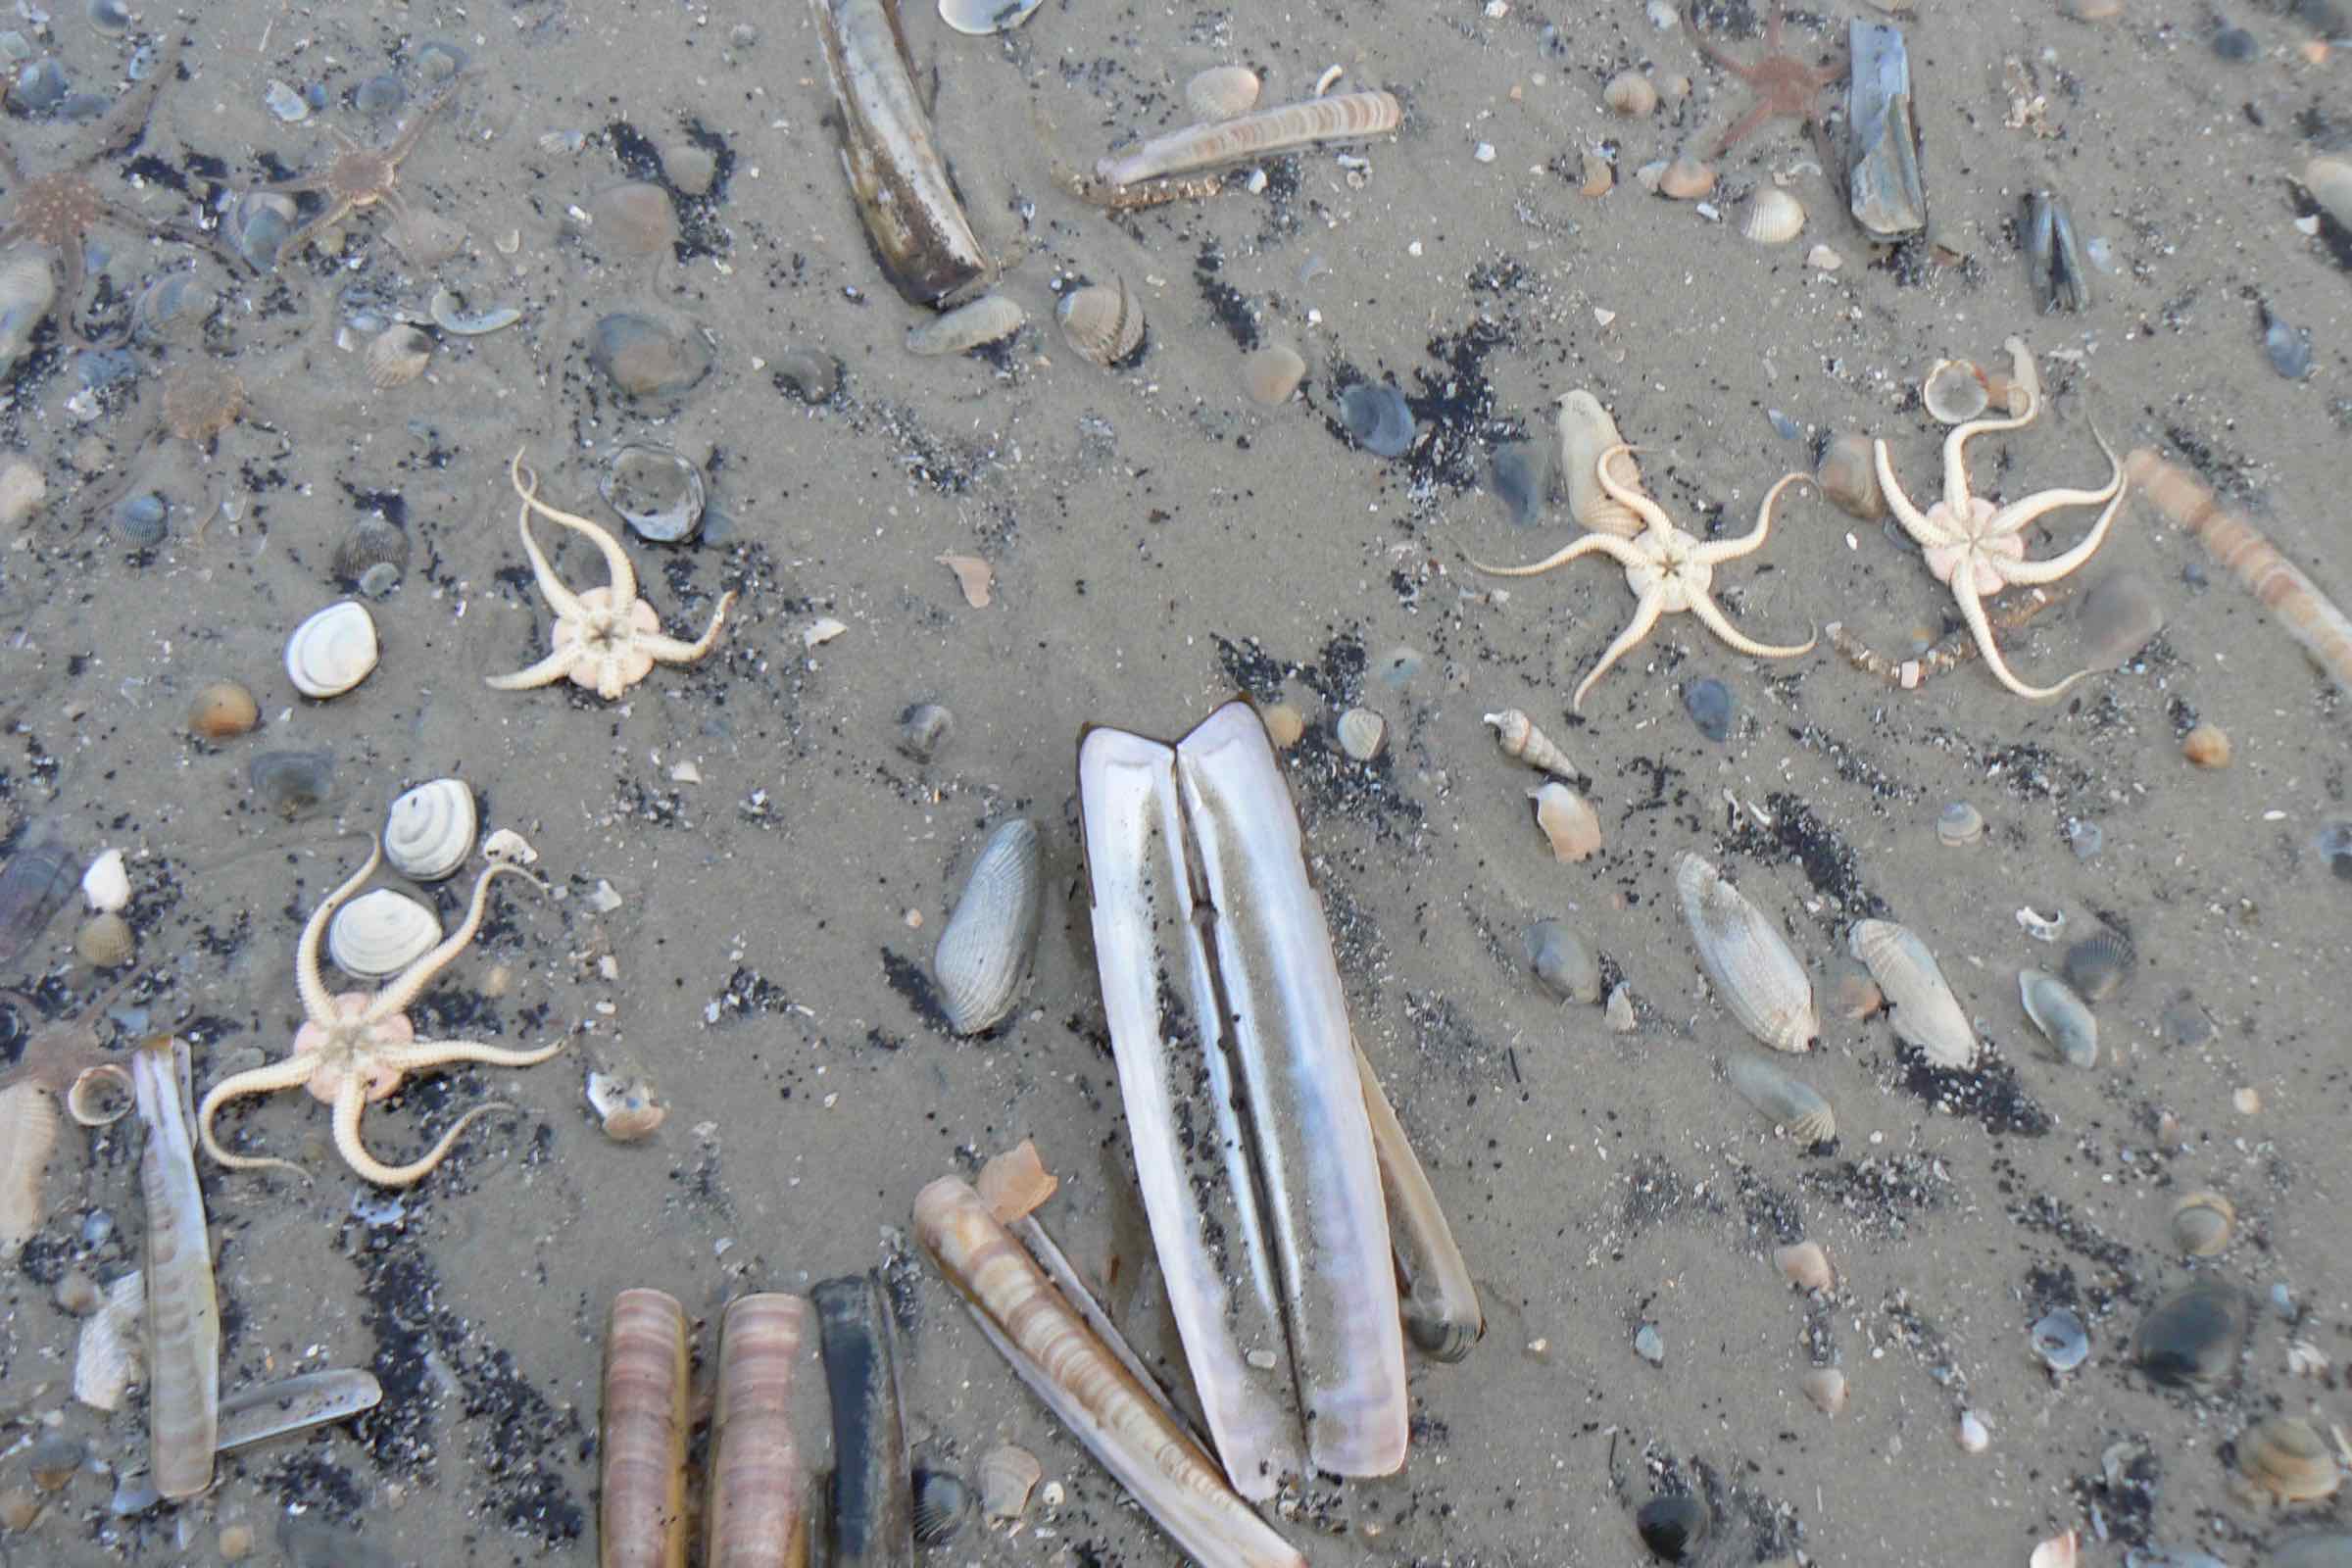 Muscheln, Müll und Bernstein - lerne im Nationalpark-Haus häufige Strandfunde kennen und schleife deinen eigenen Bernstein! Maximal können 9 Gäste teilnehmen, melden Sie sich daher bitte telefonisch an